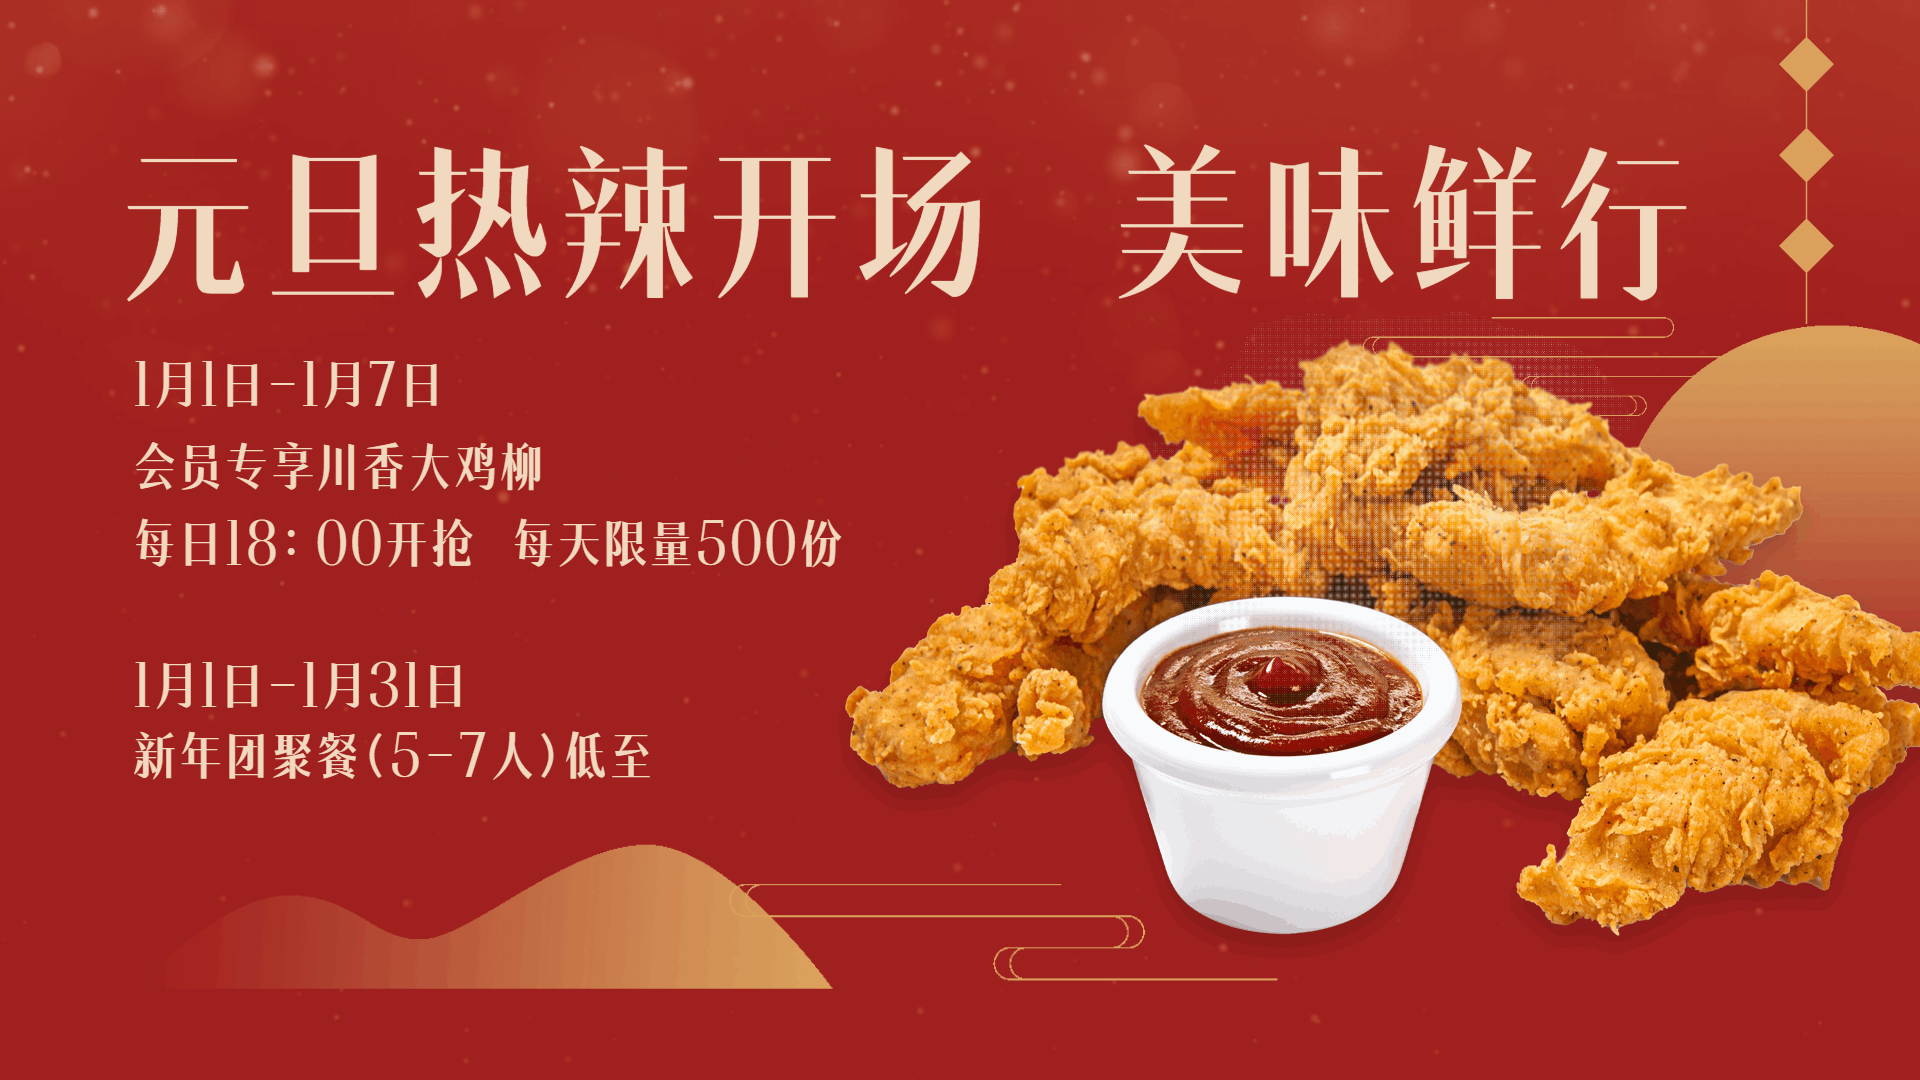 炸鸡汉堡元旦节打折买赠活动中国风横屏动图